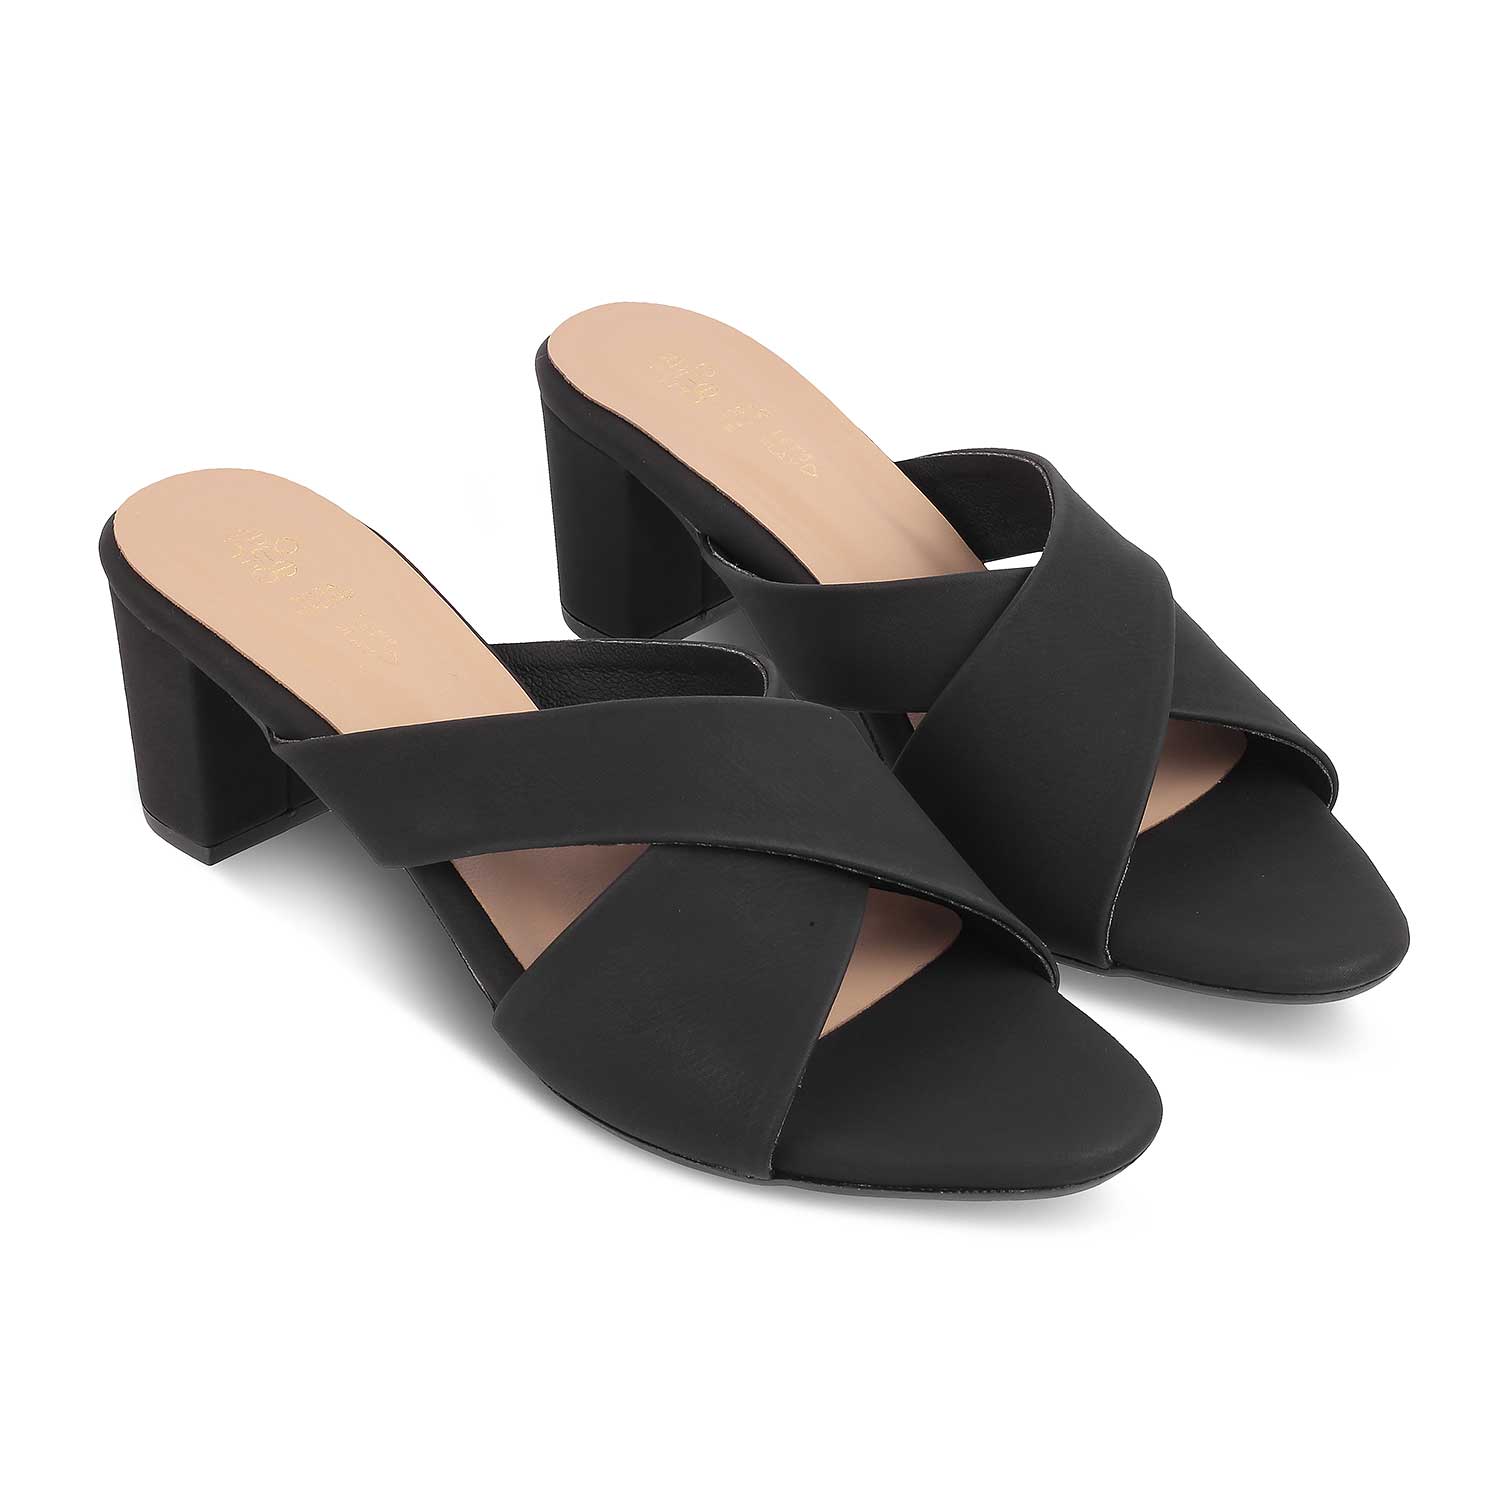 The Lisburn Black Women's Dress Block Heel Sandals Tresmode - Tresmode